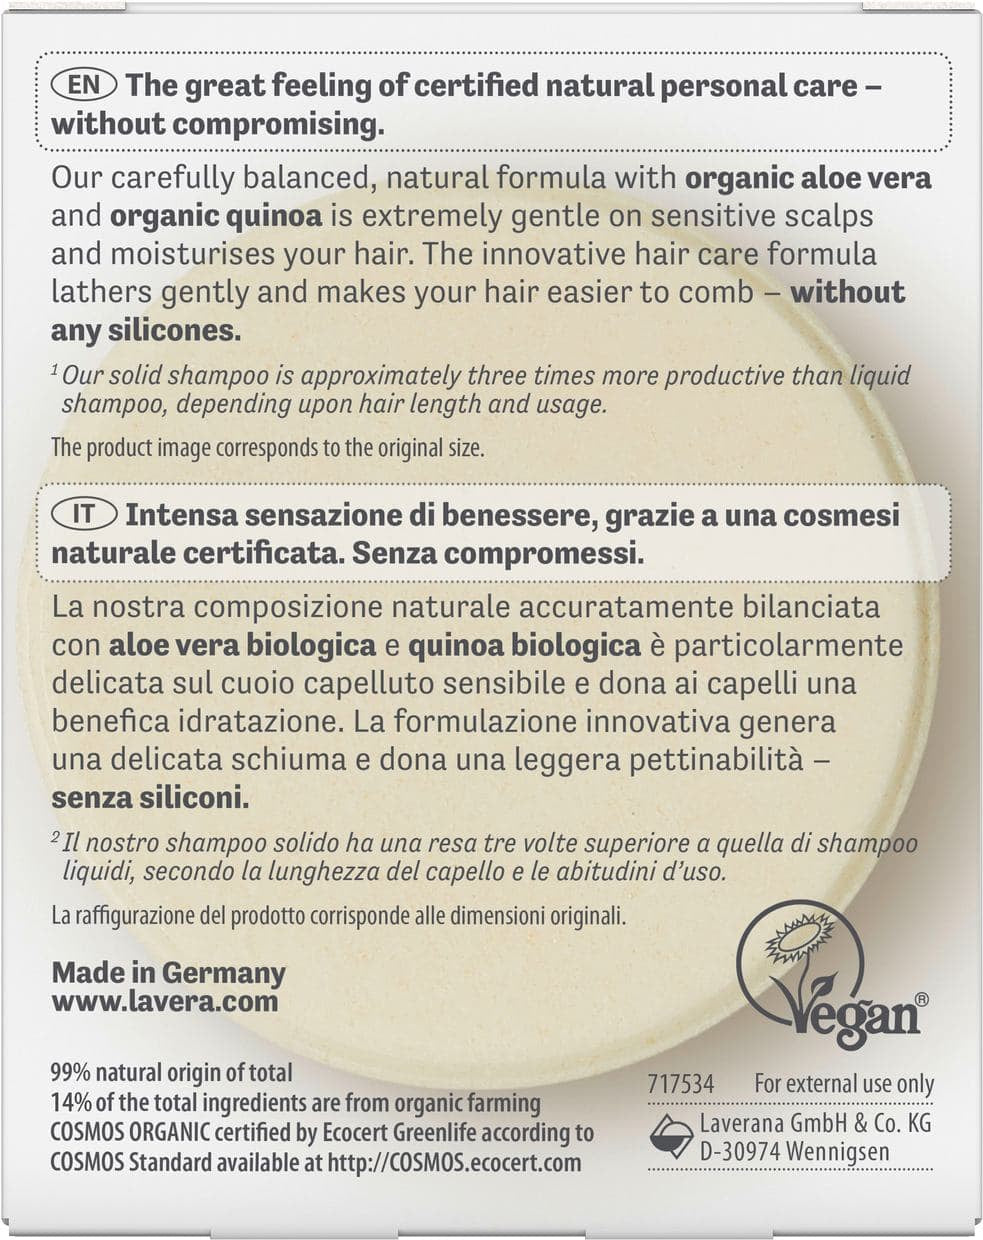 Organic Basic Sensitiv Moisture & Care Shampoo Bar 50g